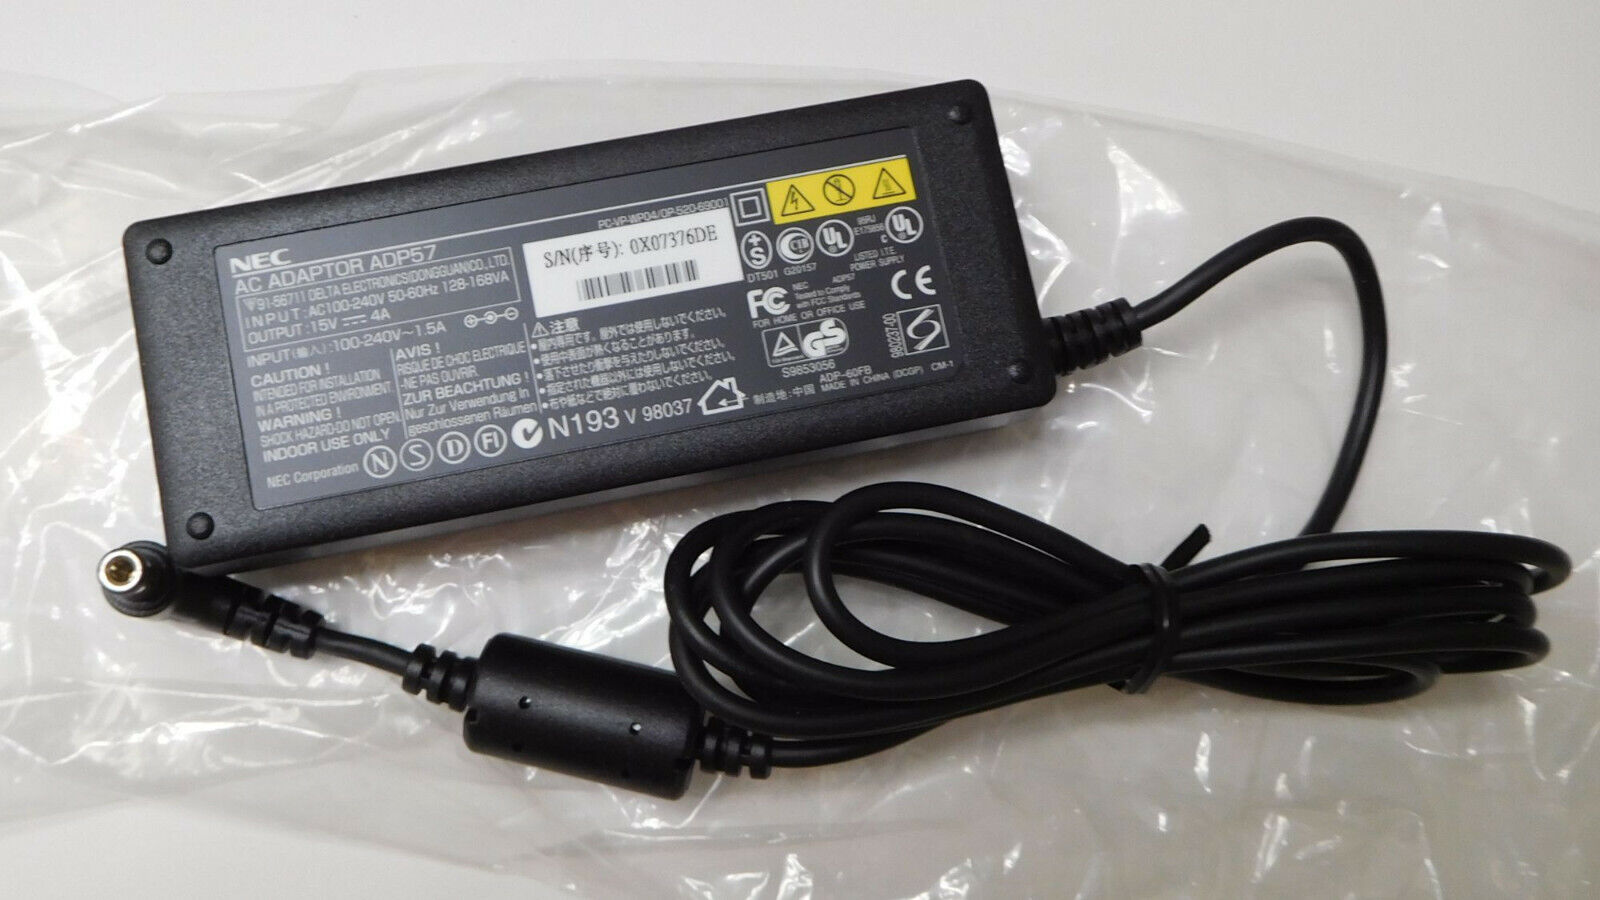 *Brand NEW* 15V 4A AC Adapter Genuine NEC Versa ADP57 Power Supply - Click Image to Close